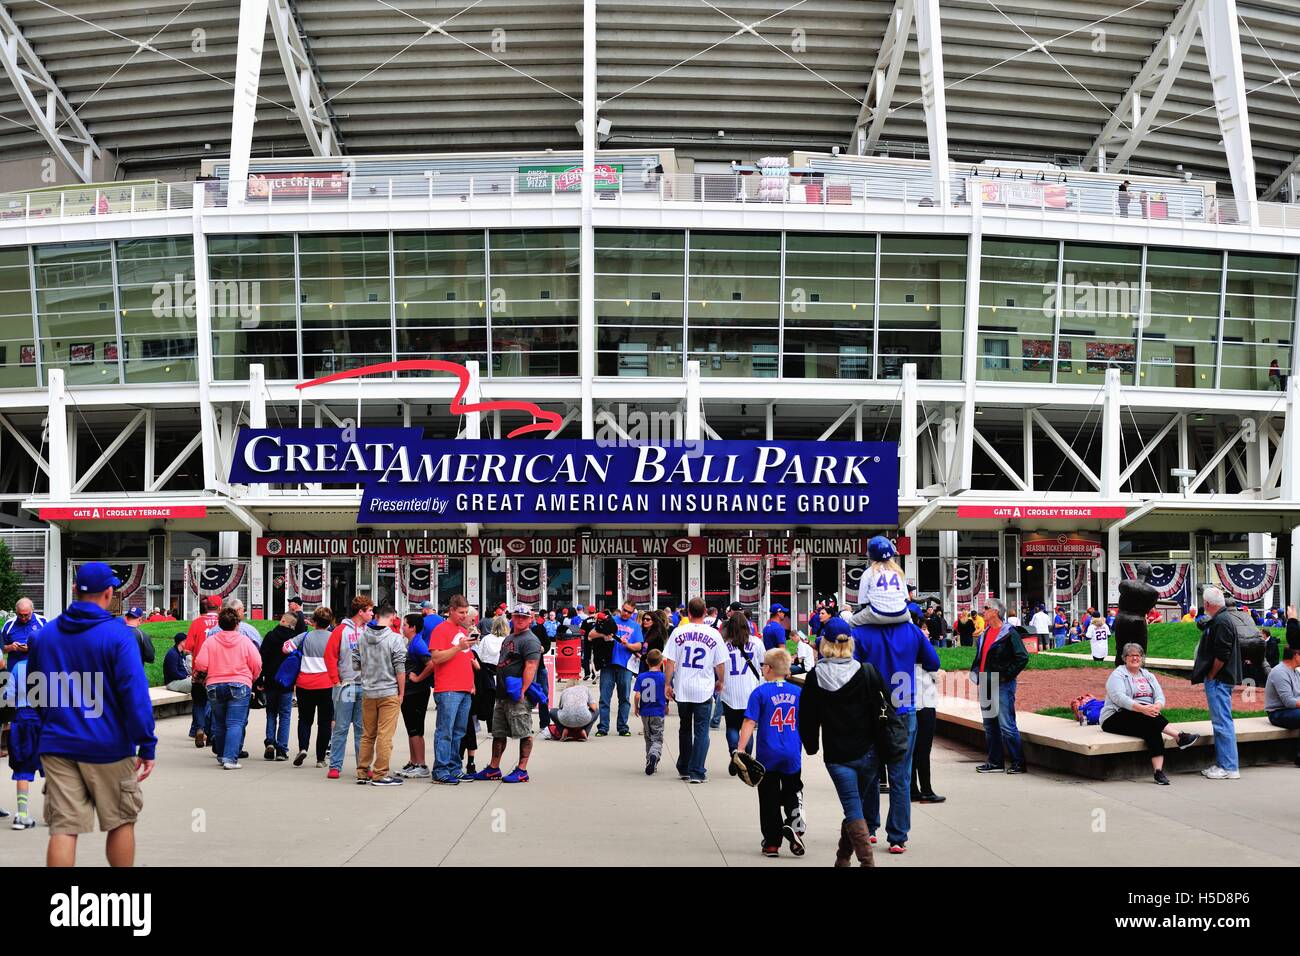 Ventole, soprattutto quelli della visita di Chicago Cubs, immettendo la Great American Ballpark, home per i Cincinnati Reds. Cincinnati, Ohio, Stati Uniti d'America. Foto Stock